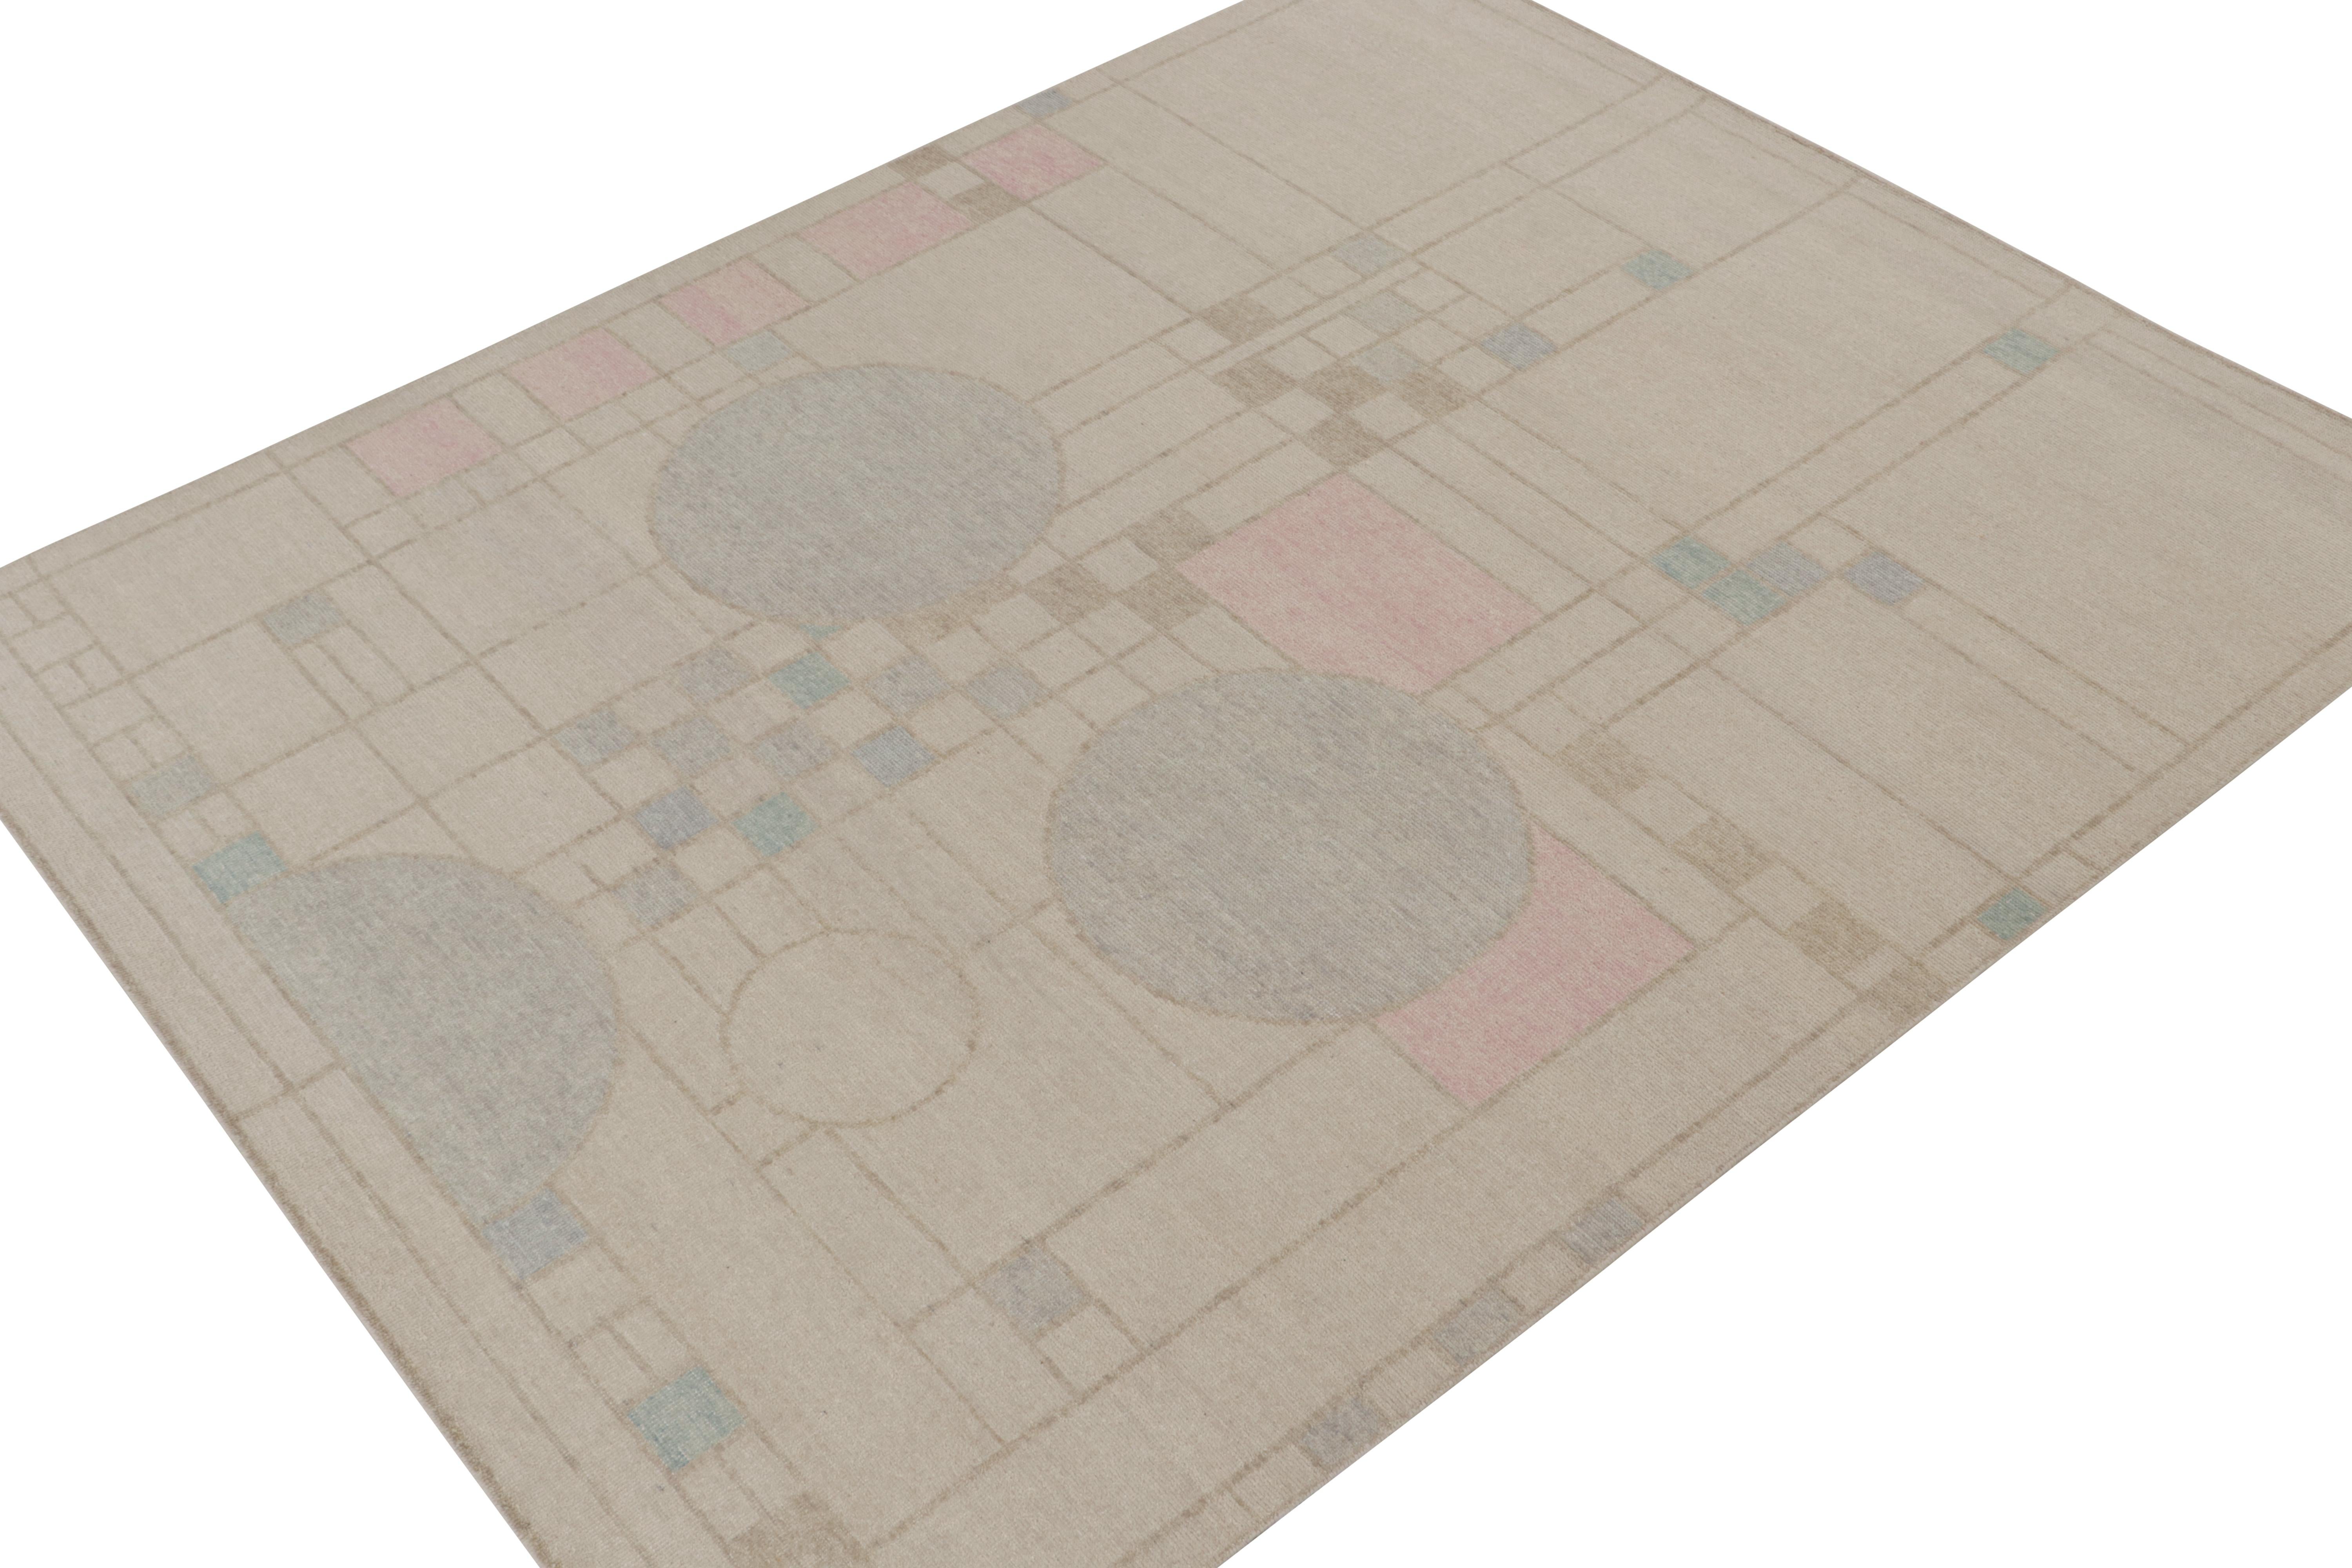 Ce tapis 8x10 est un nouvel ajout audacieux à la Collection Homage de Rug & Kilim. Noué à la main en laine et en coton, son design s'inspire des tapis modernes du milieu du siècle et le reprend dans un style texturé en détresse.

Plus loin dans le